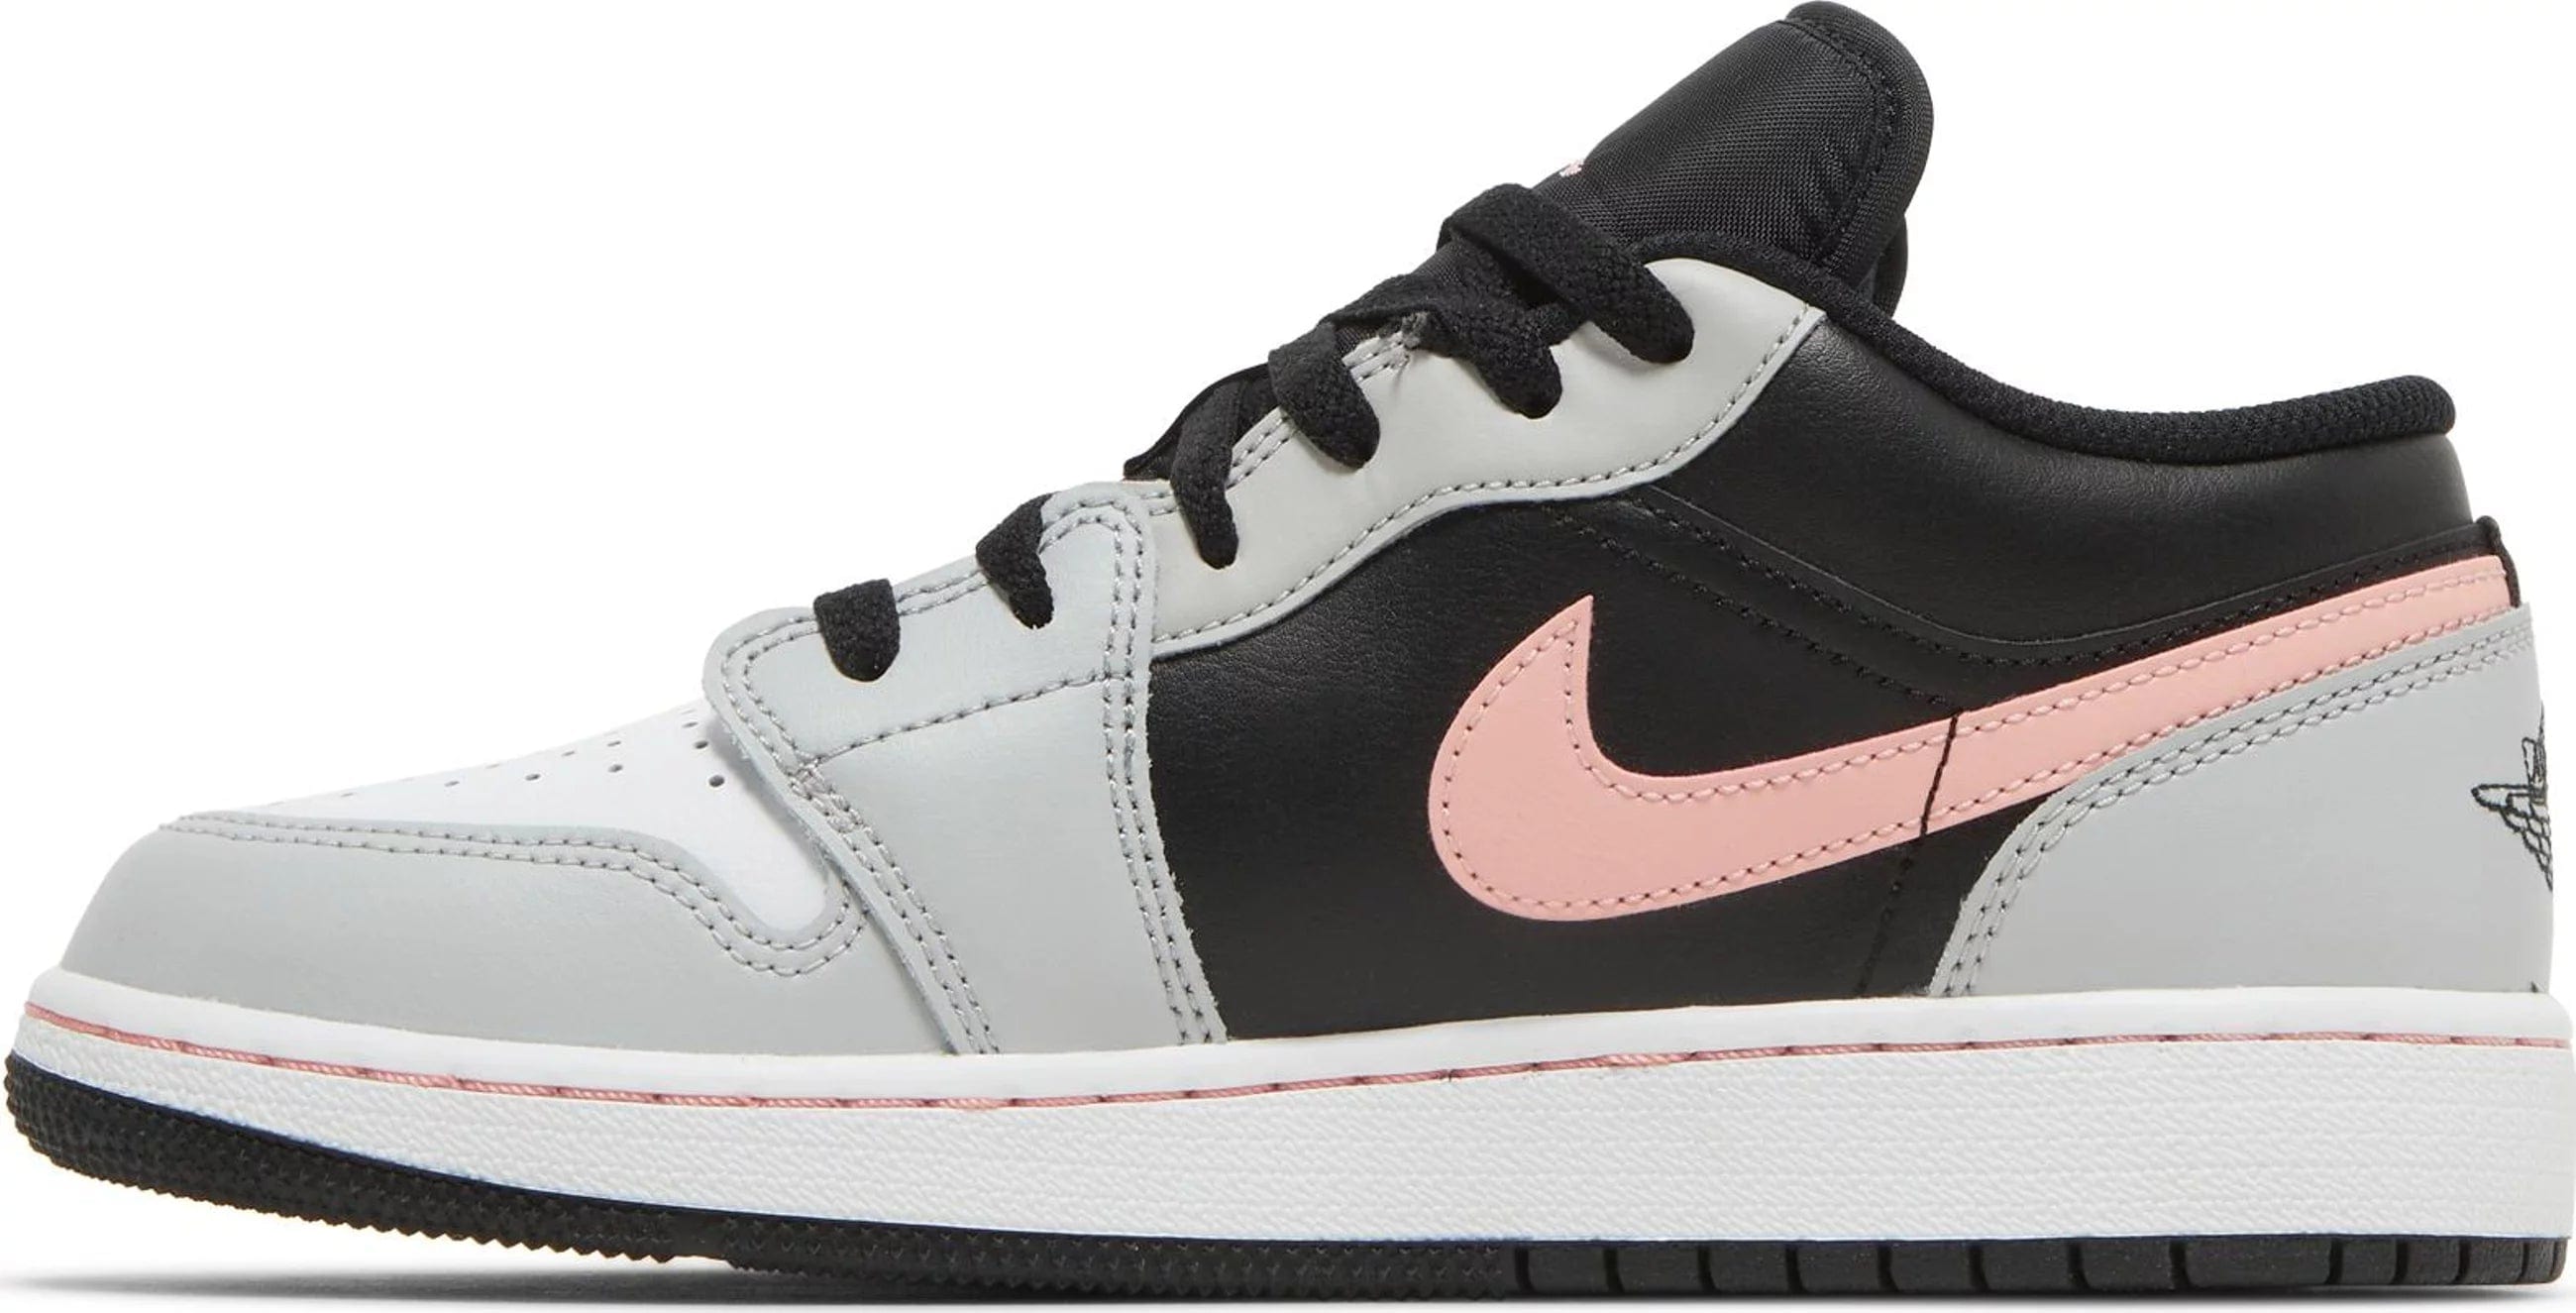 Nike Air Jordan 1 Low Black Grey Pink (GS) Women's